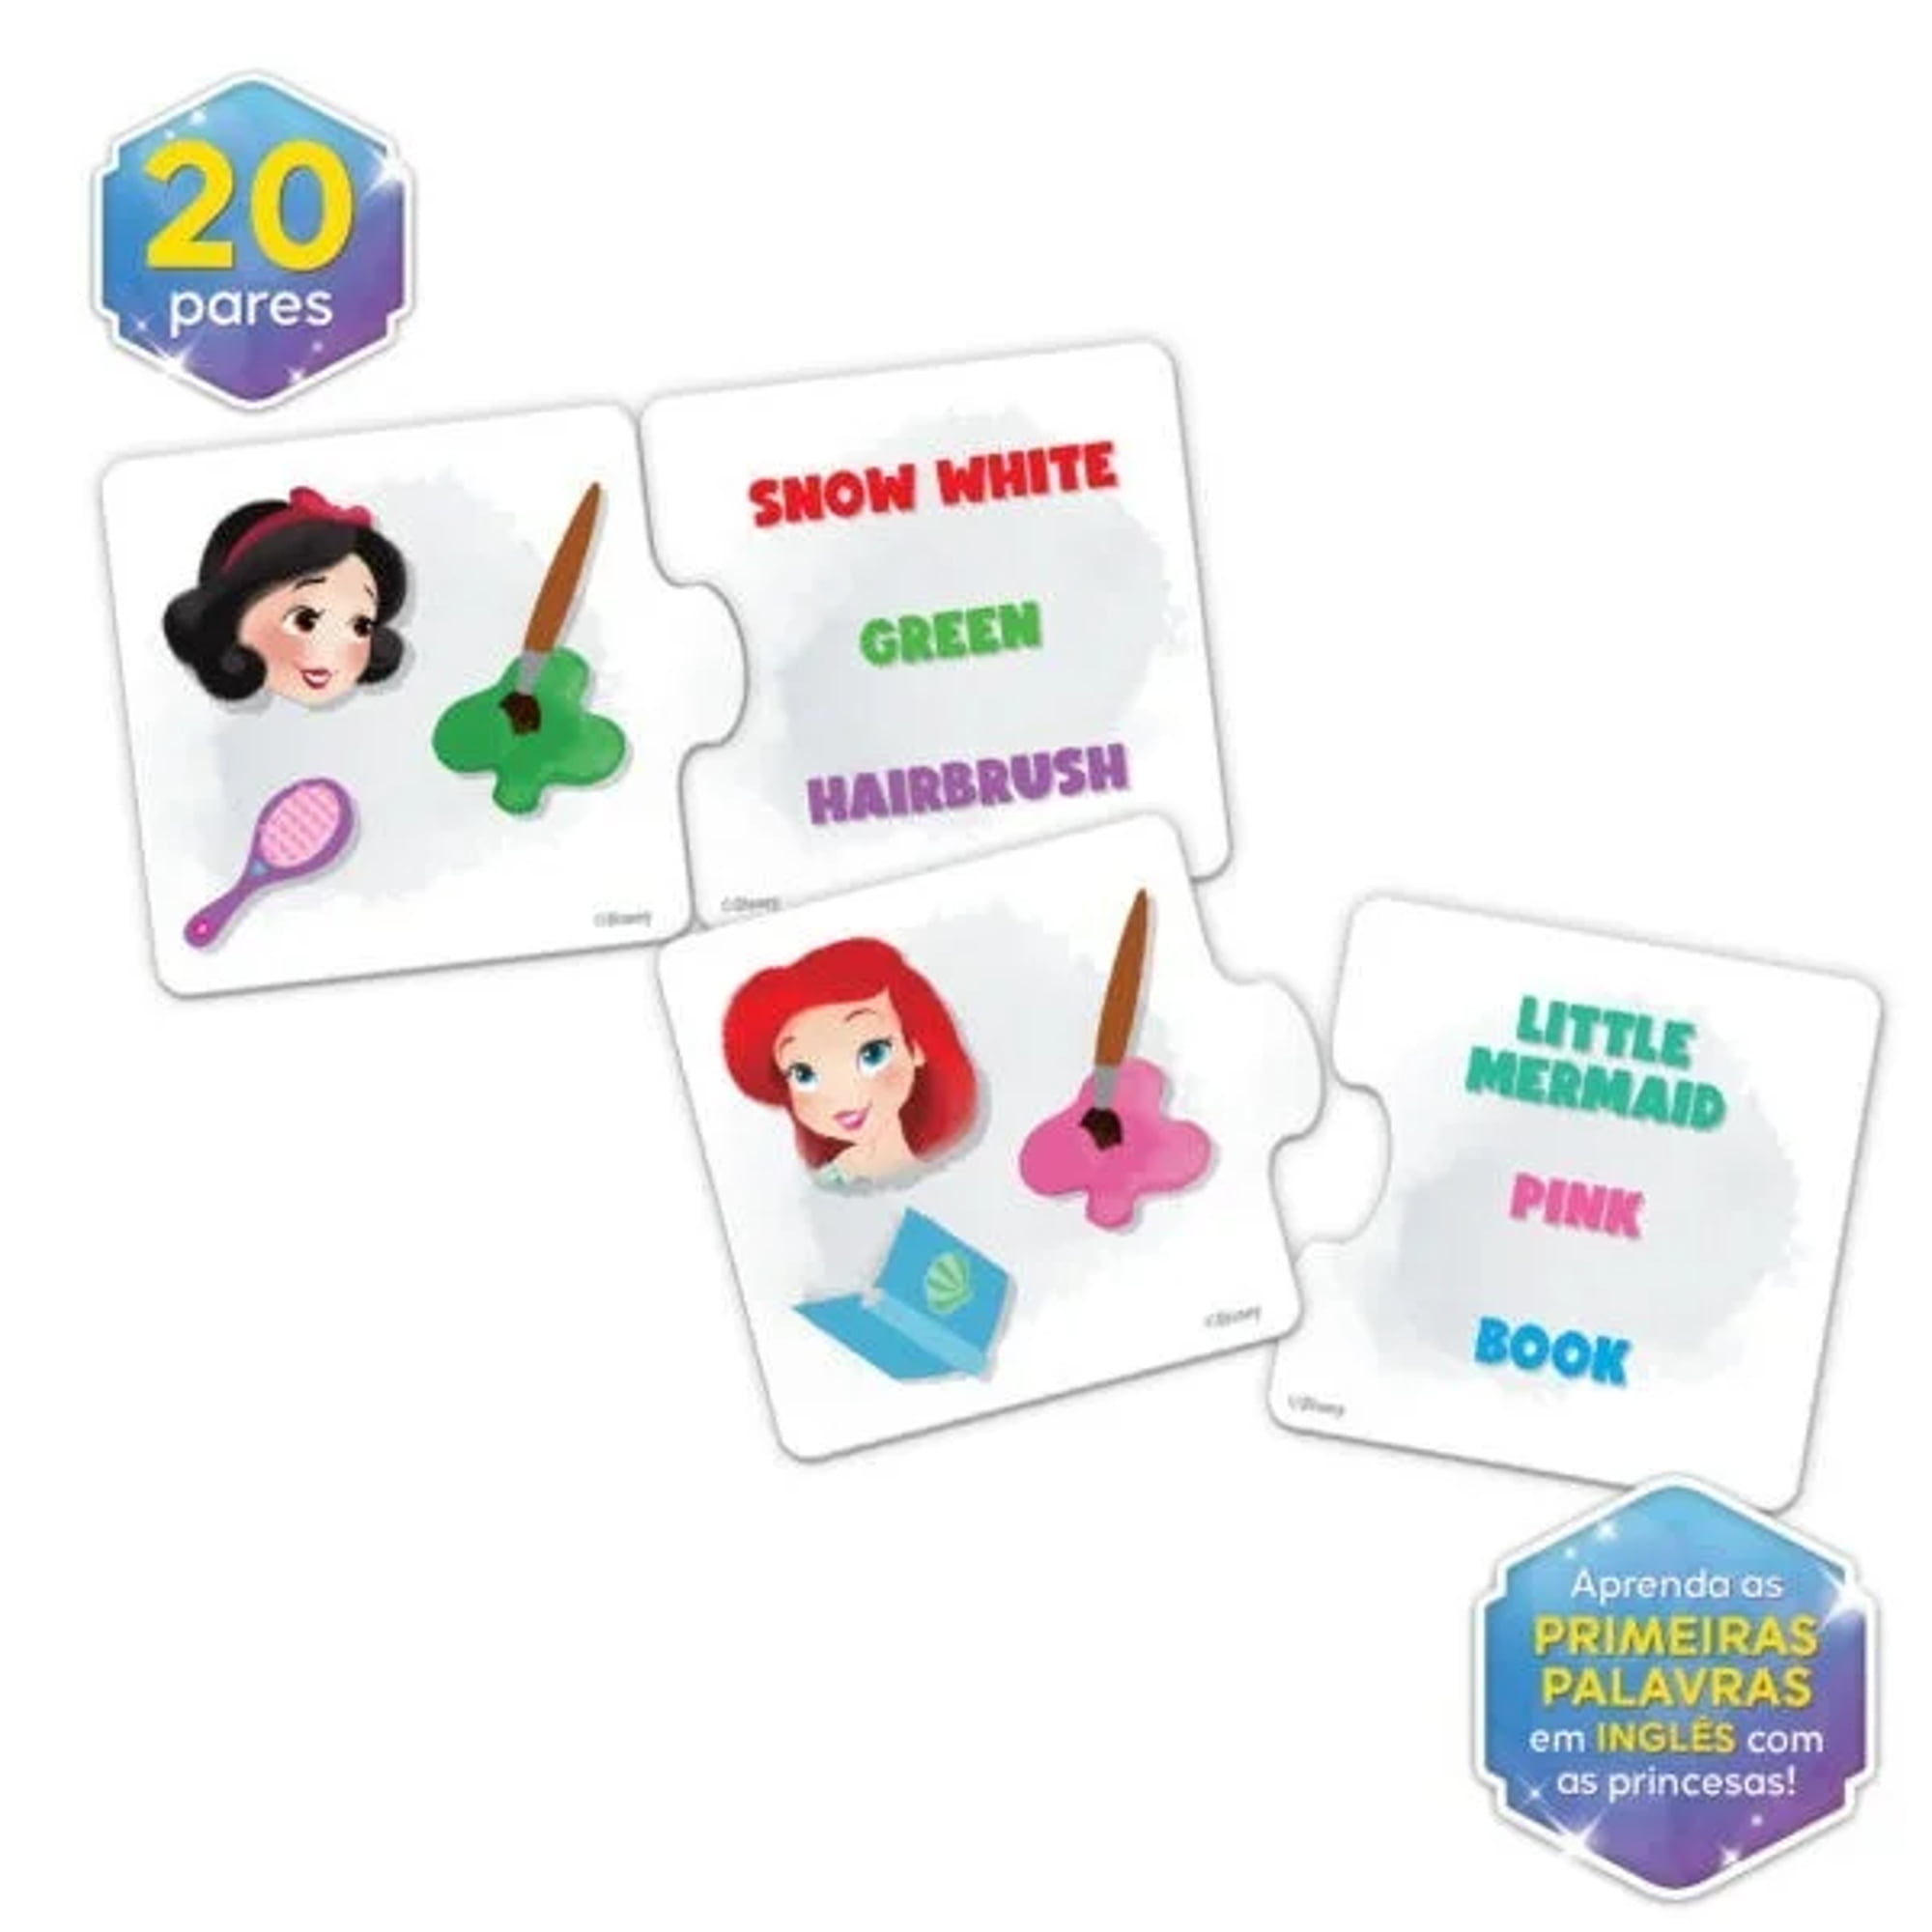 Princesas Disney, Educativo, Descobrindo as Vogais - Mimo Play - Mimo Toys